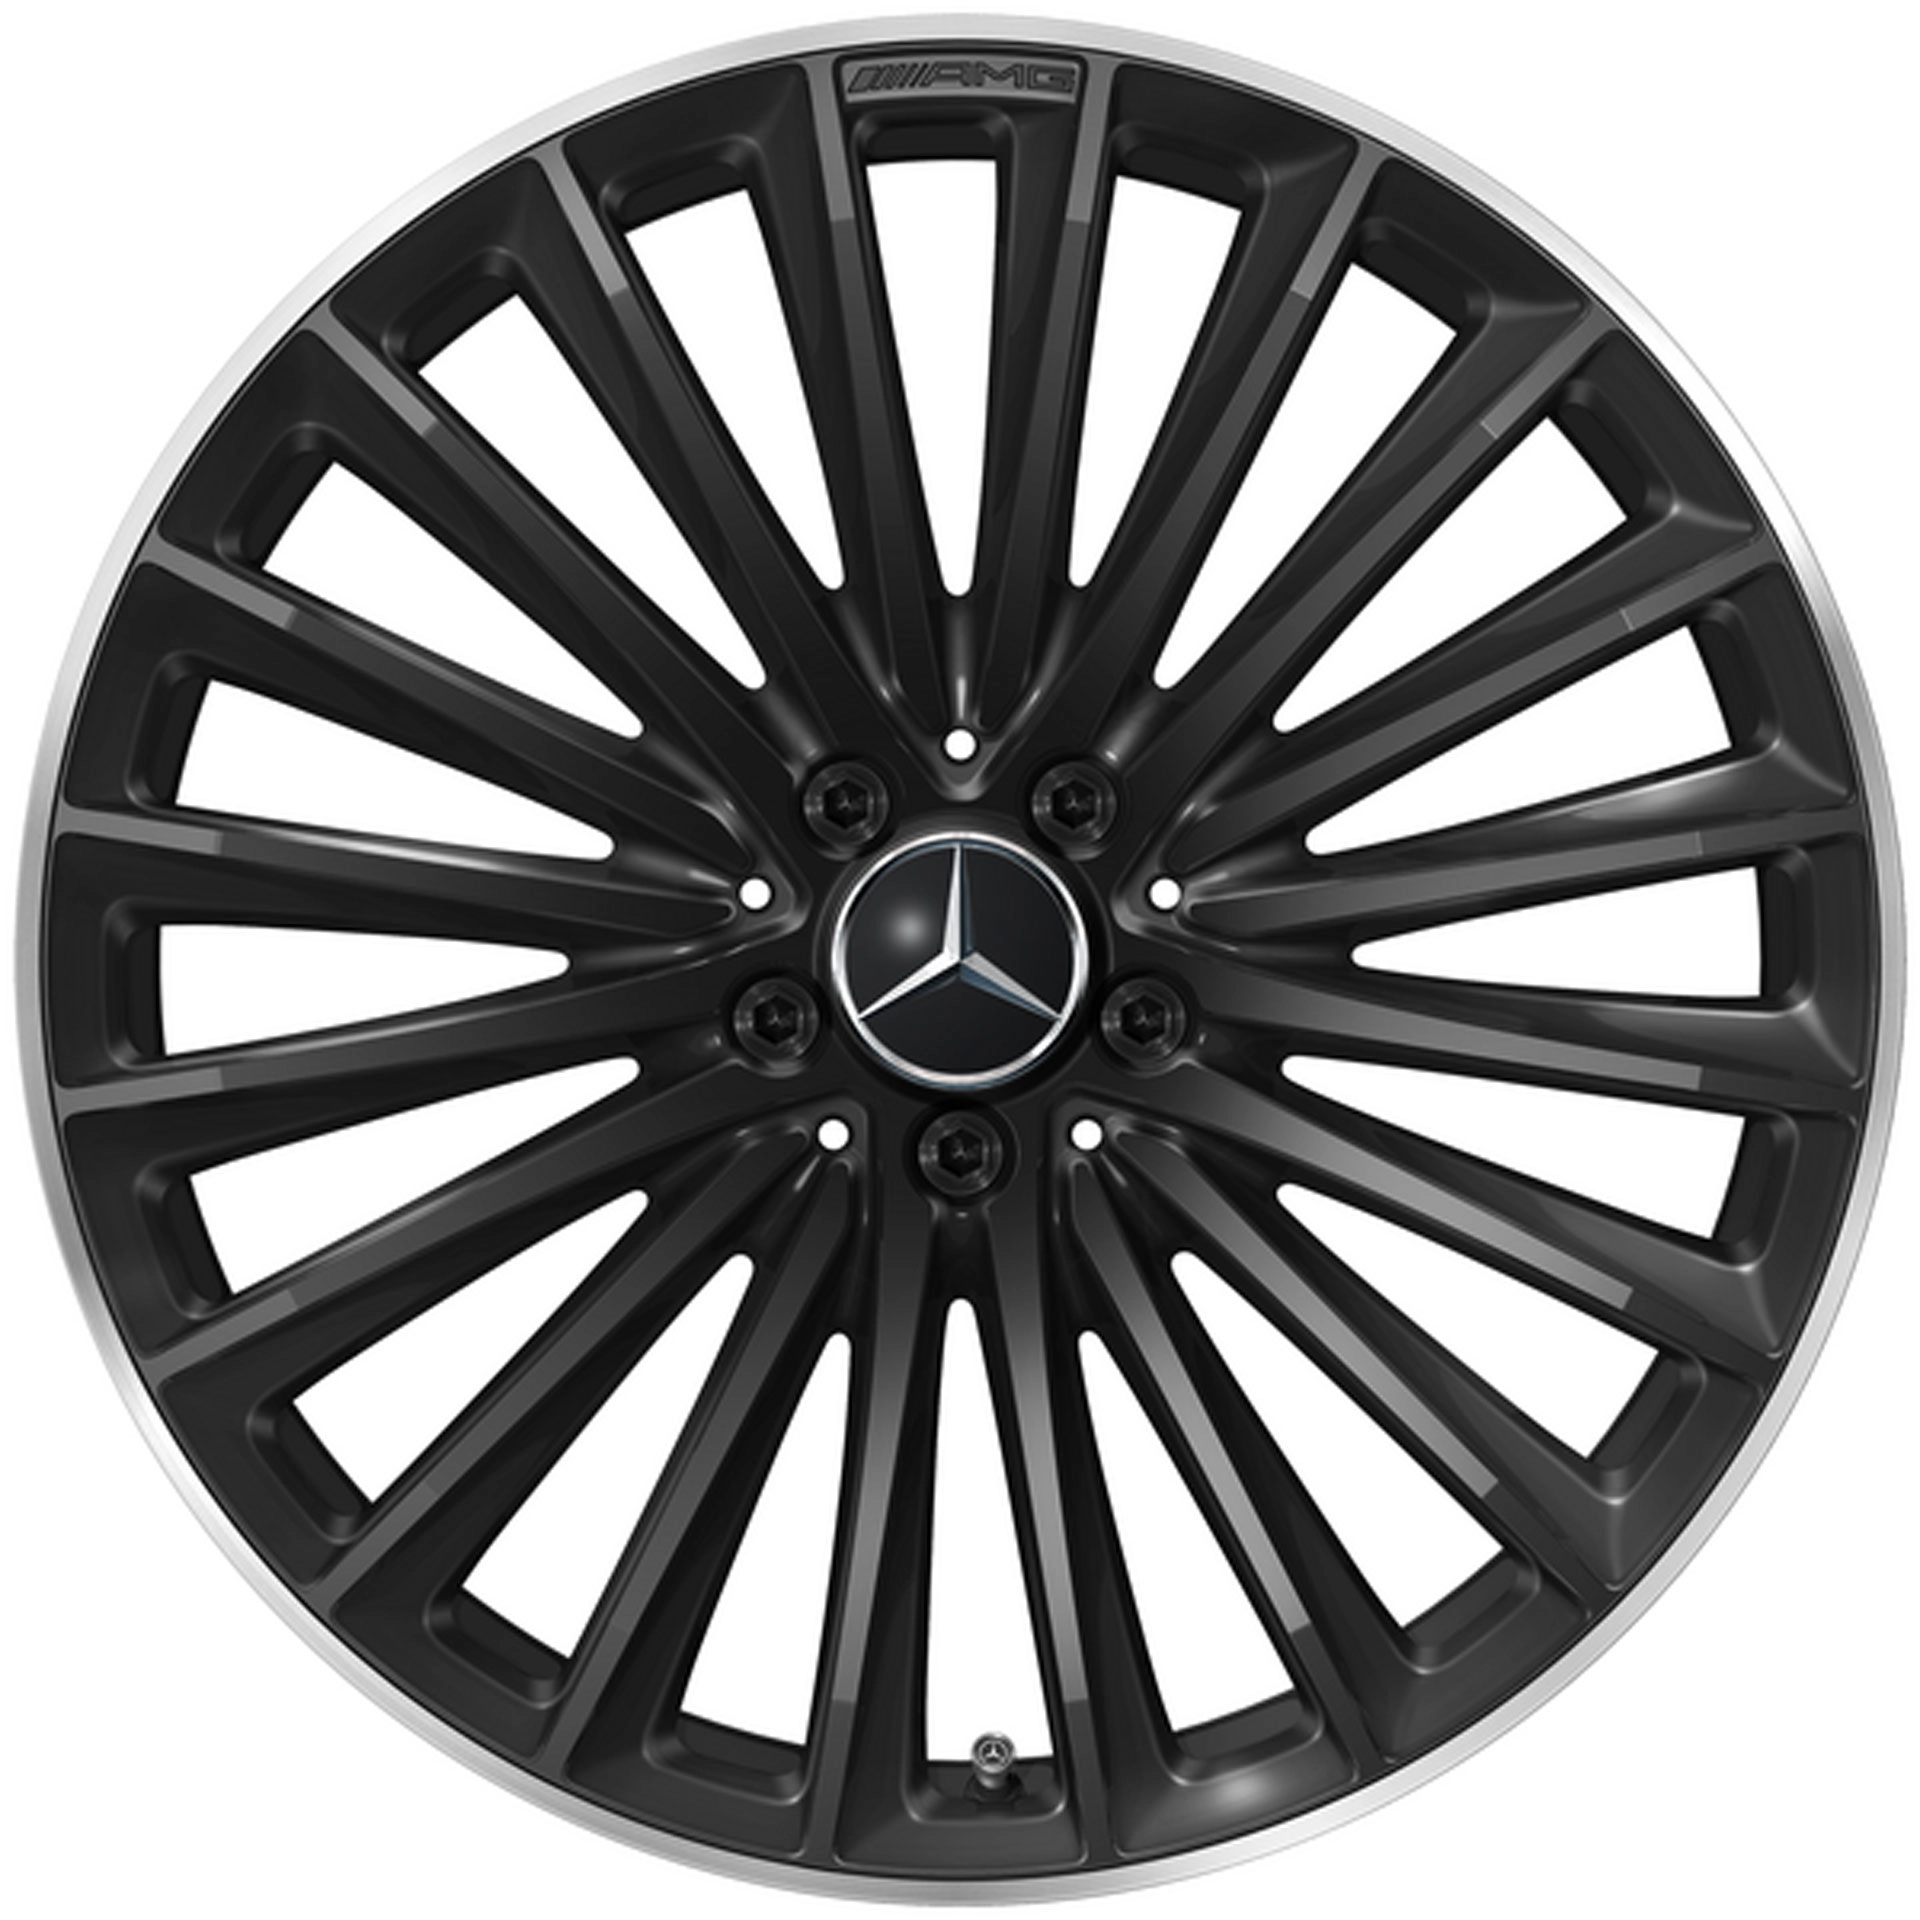 Mercedes-AMG Vielspeichen-Rad 20 Zoll Leichtmetallfelge GLC X254 schwarz glanzgedreht A25440108007X72